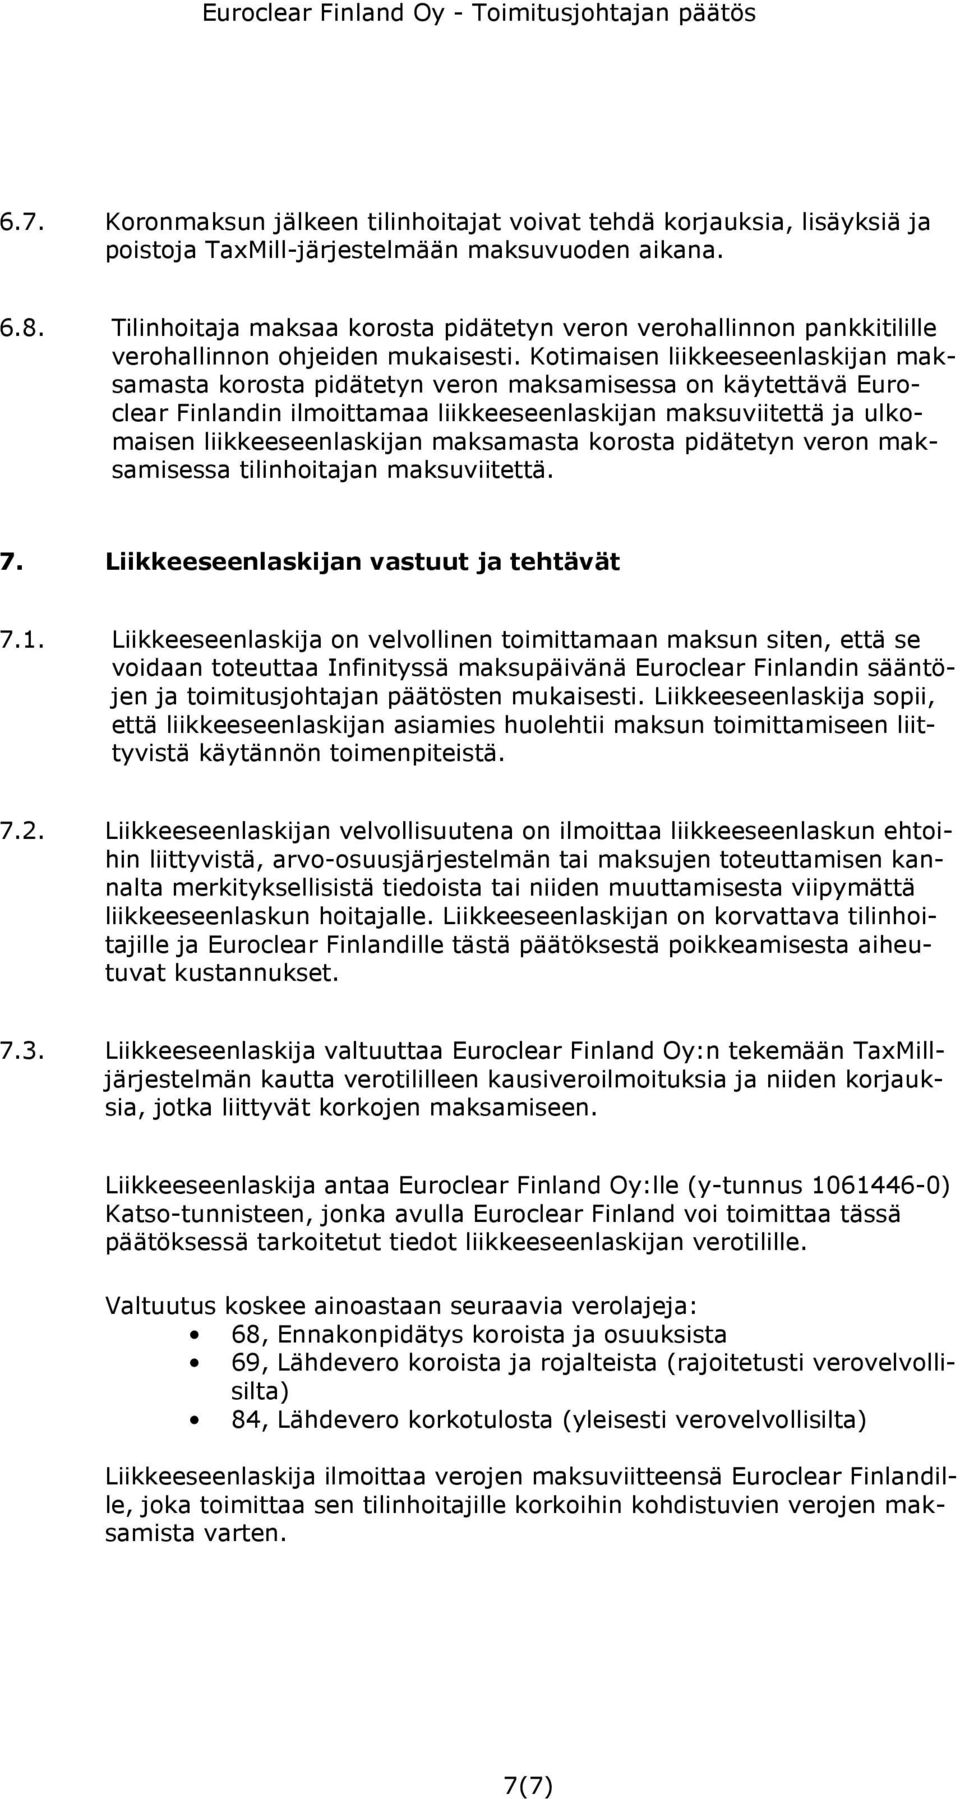 Kotimaisen liikkeeseenlaskijan maksamasta korosta pidätetyn veron maksamisessa on käytettävä Euroclear Finlandin ilmoittamaa liikkeeseenlaskijan maksuviitettä ja ulkomaisen liikkeeseenlaskijan